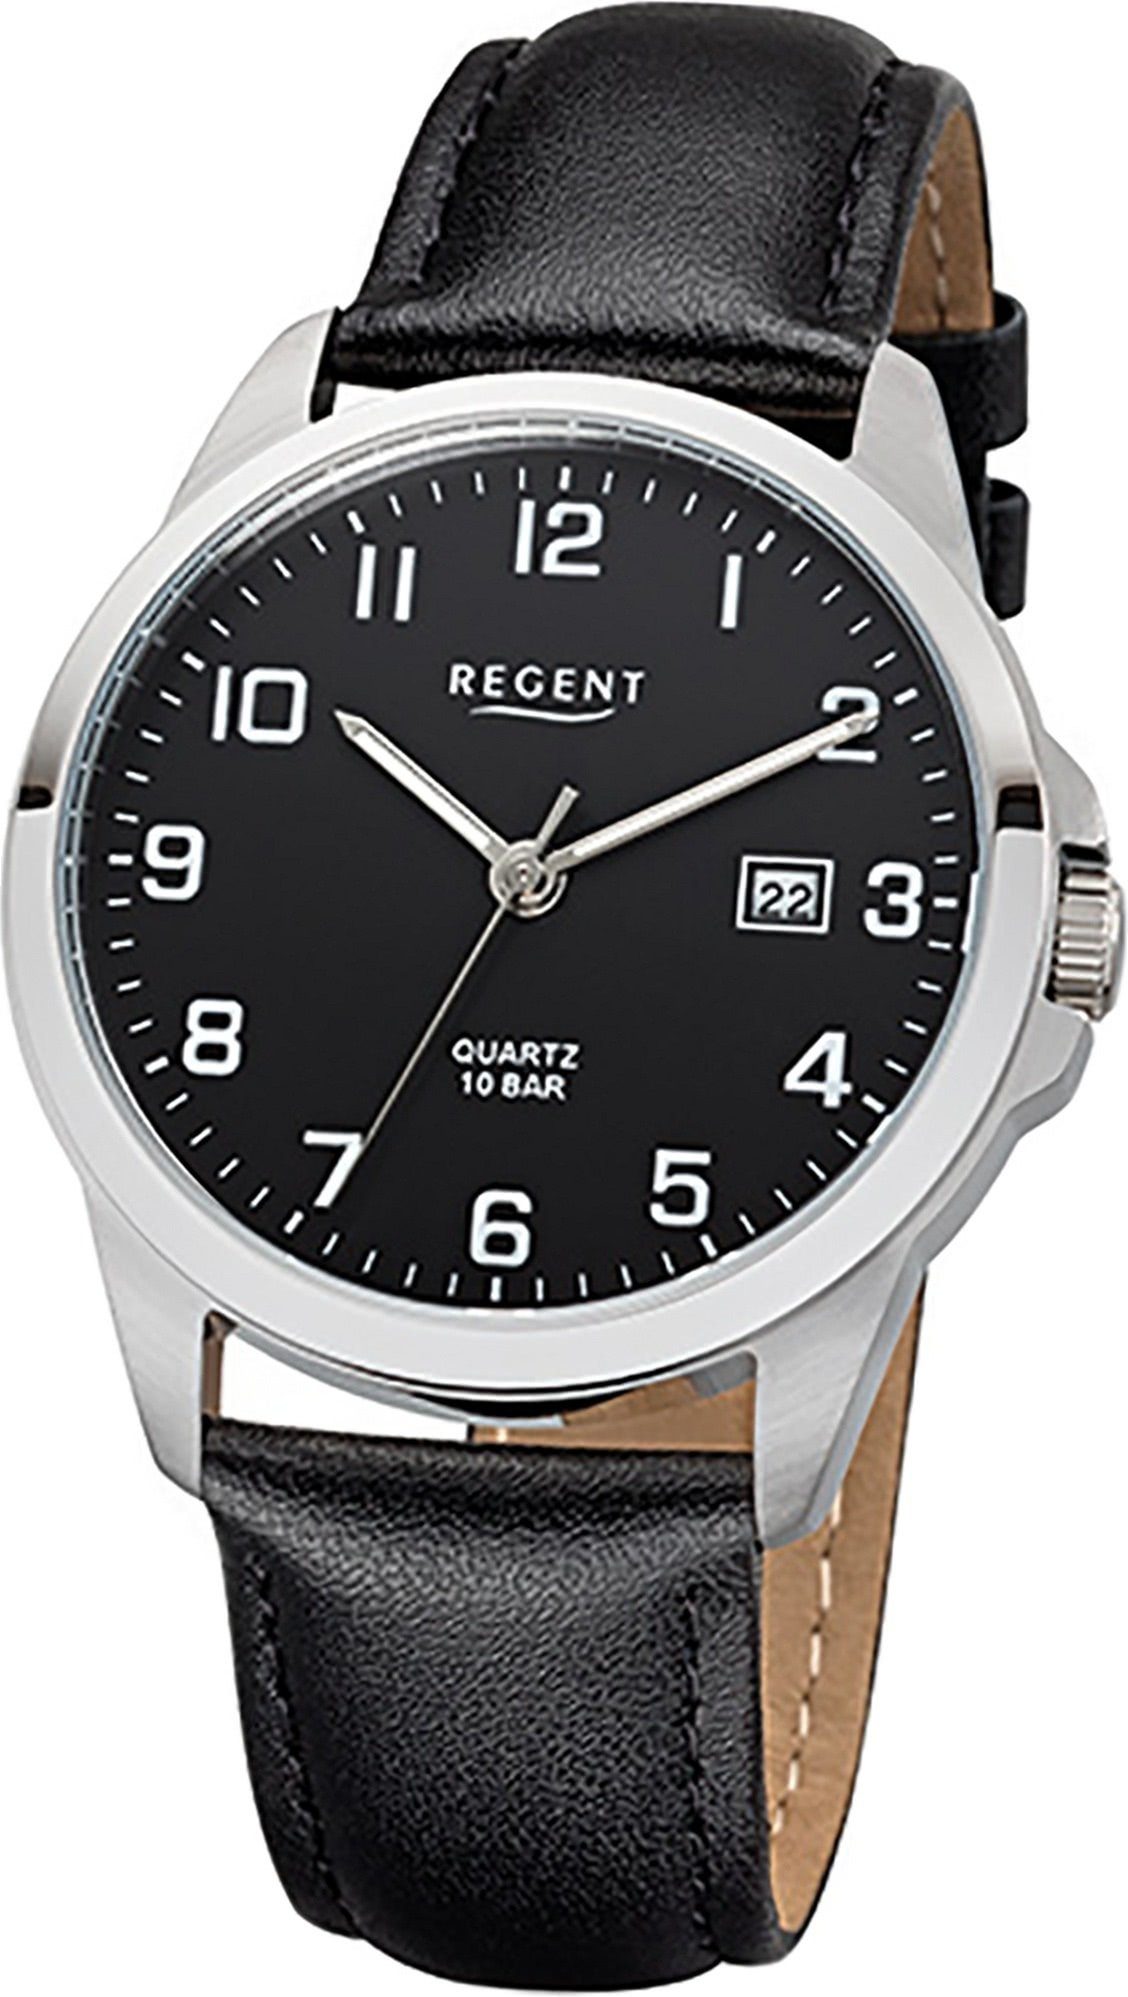 39mm) F-1008 rundes Uhr Regent Quarzuhr Gehäuse, schwarz, mittel Regent (ca. Lederarmband Leder Herren Herrenuhr Quarzuhr,